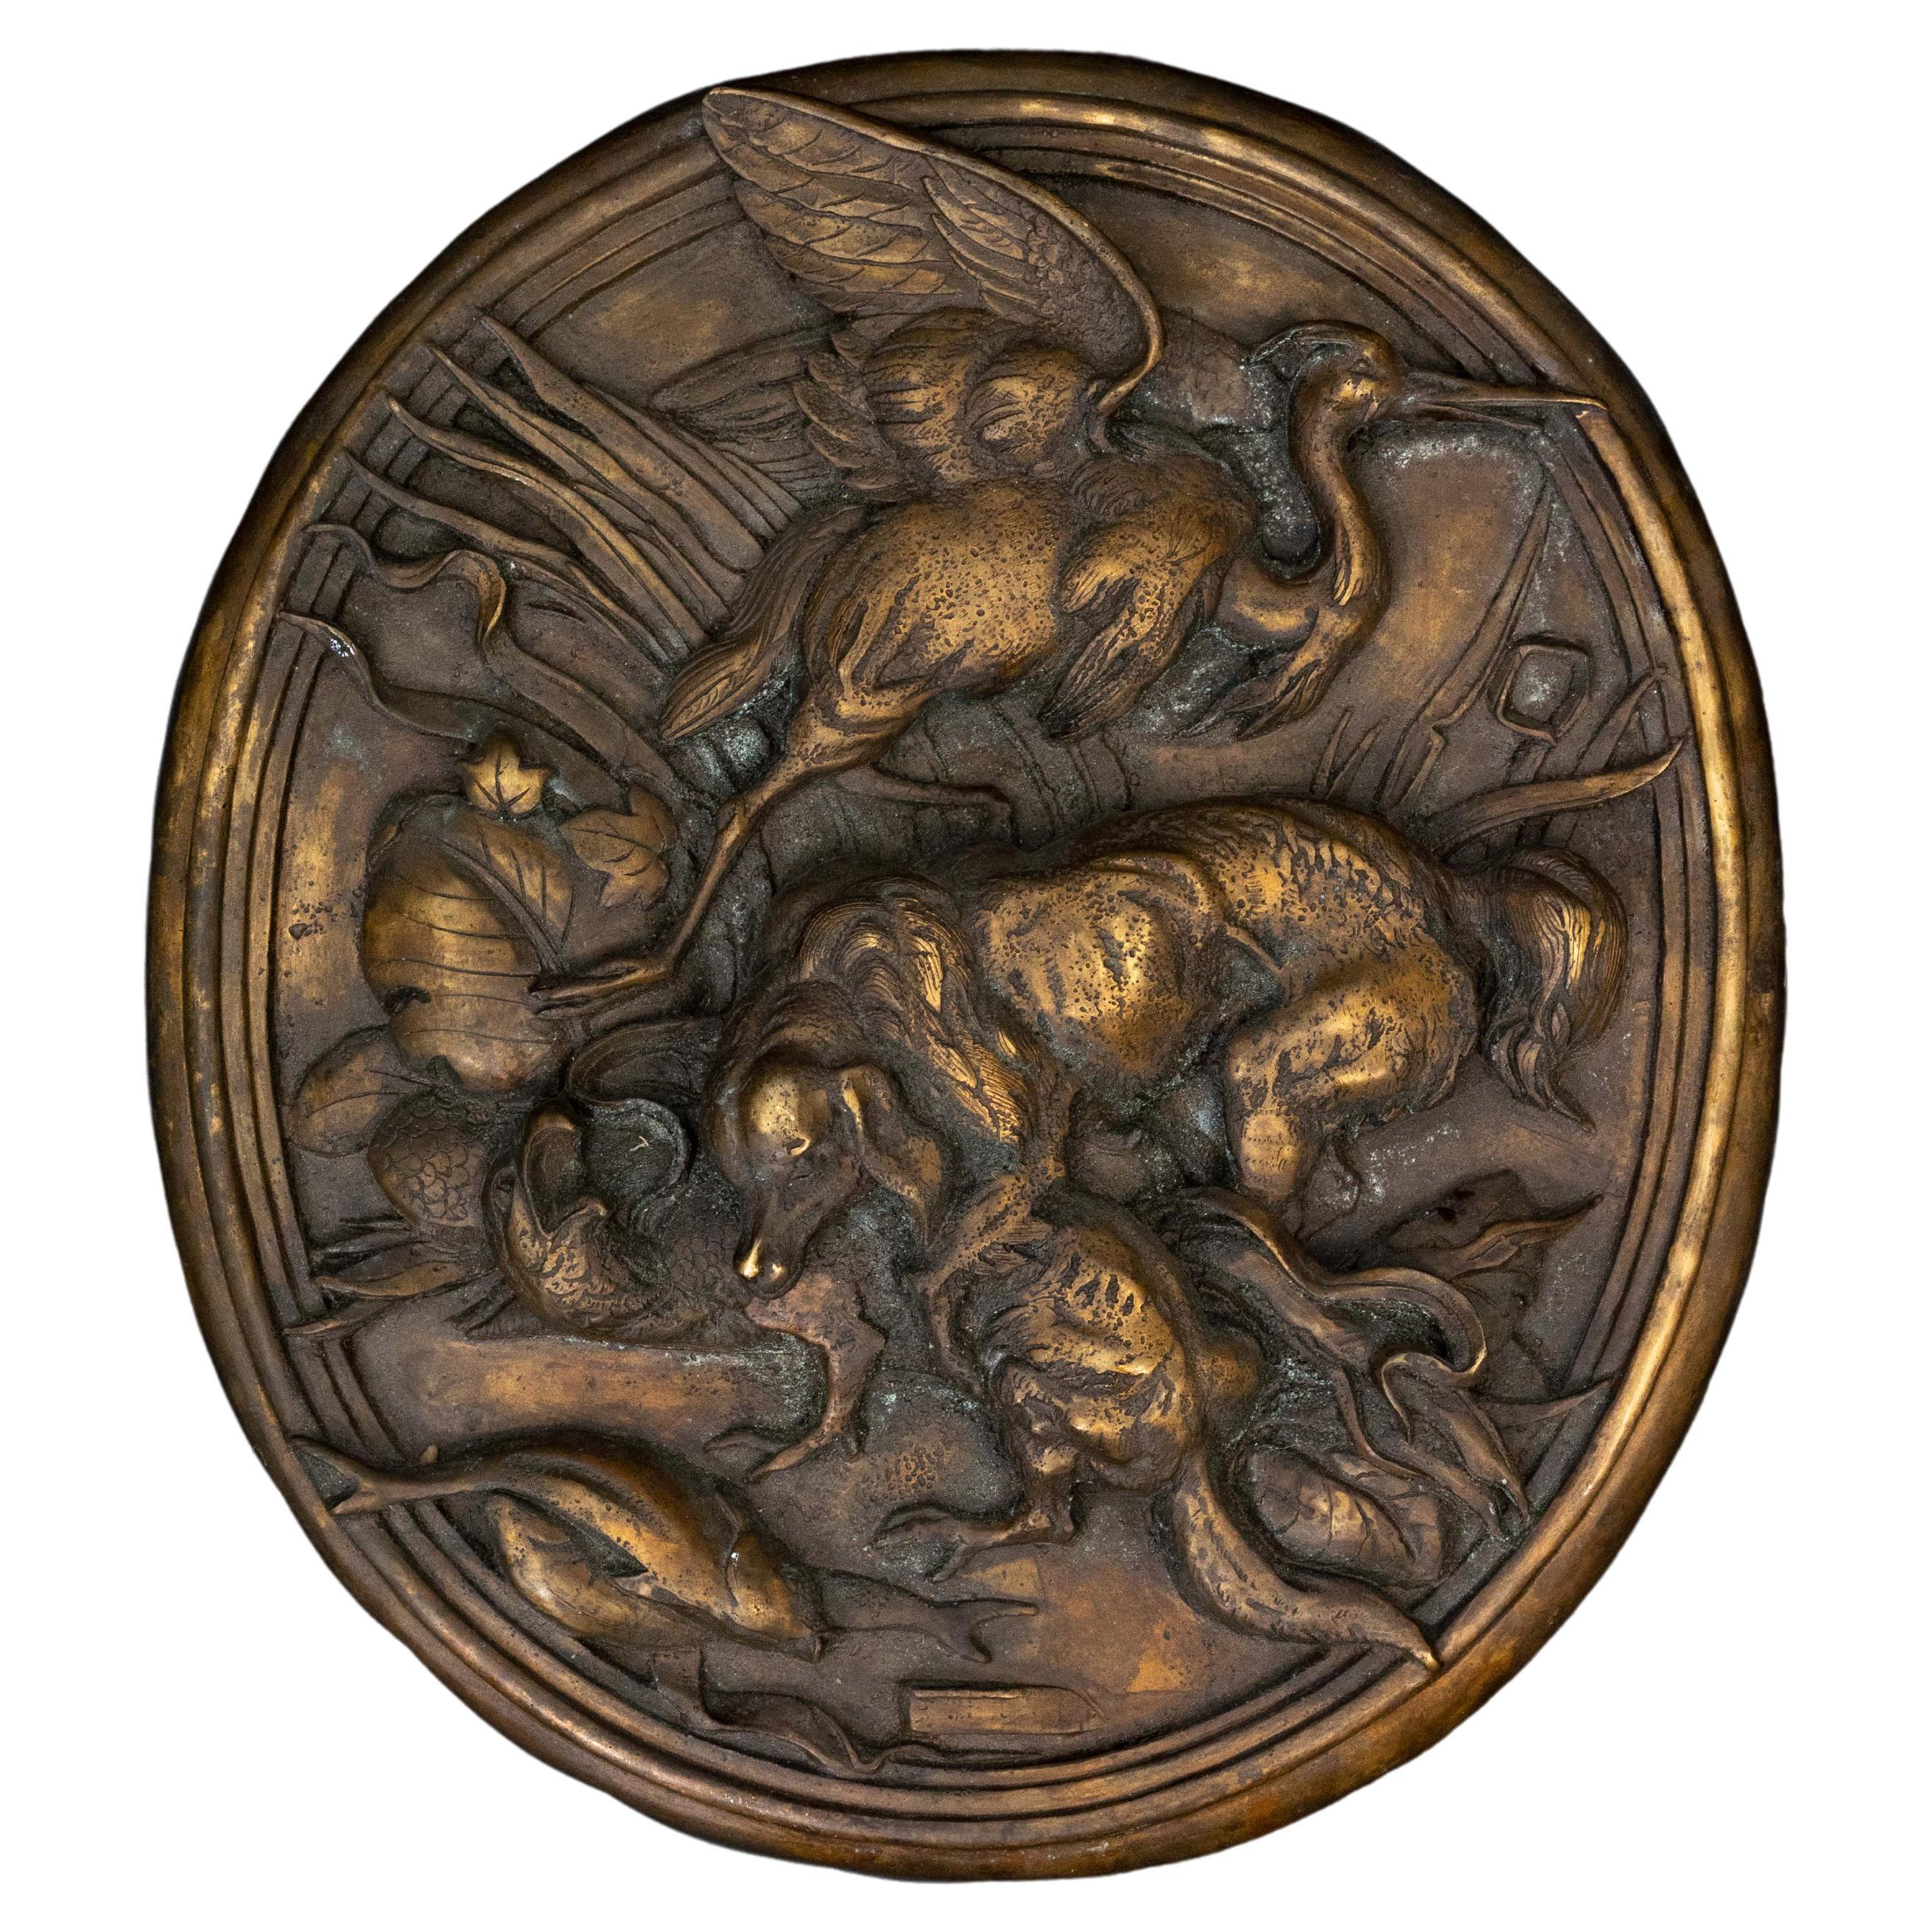 Jagdplakette aus Bronze des 19. Jahrhunderts